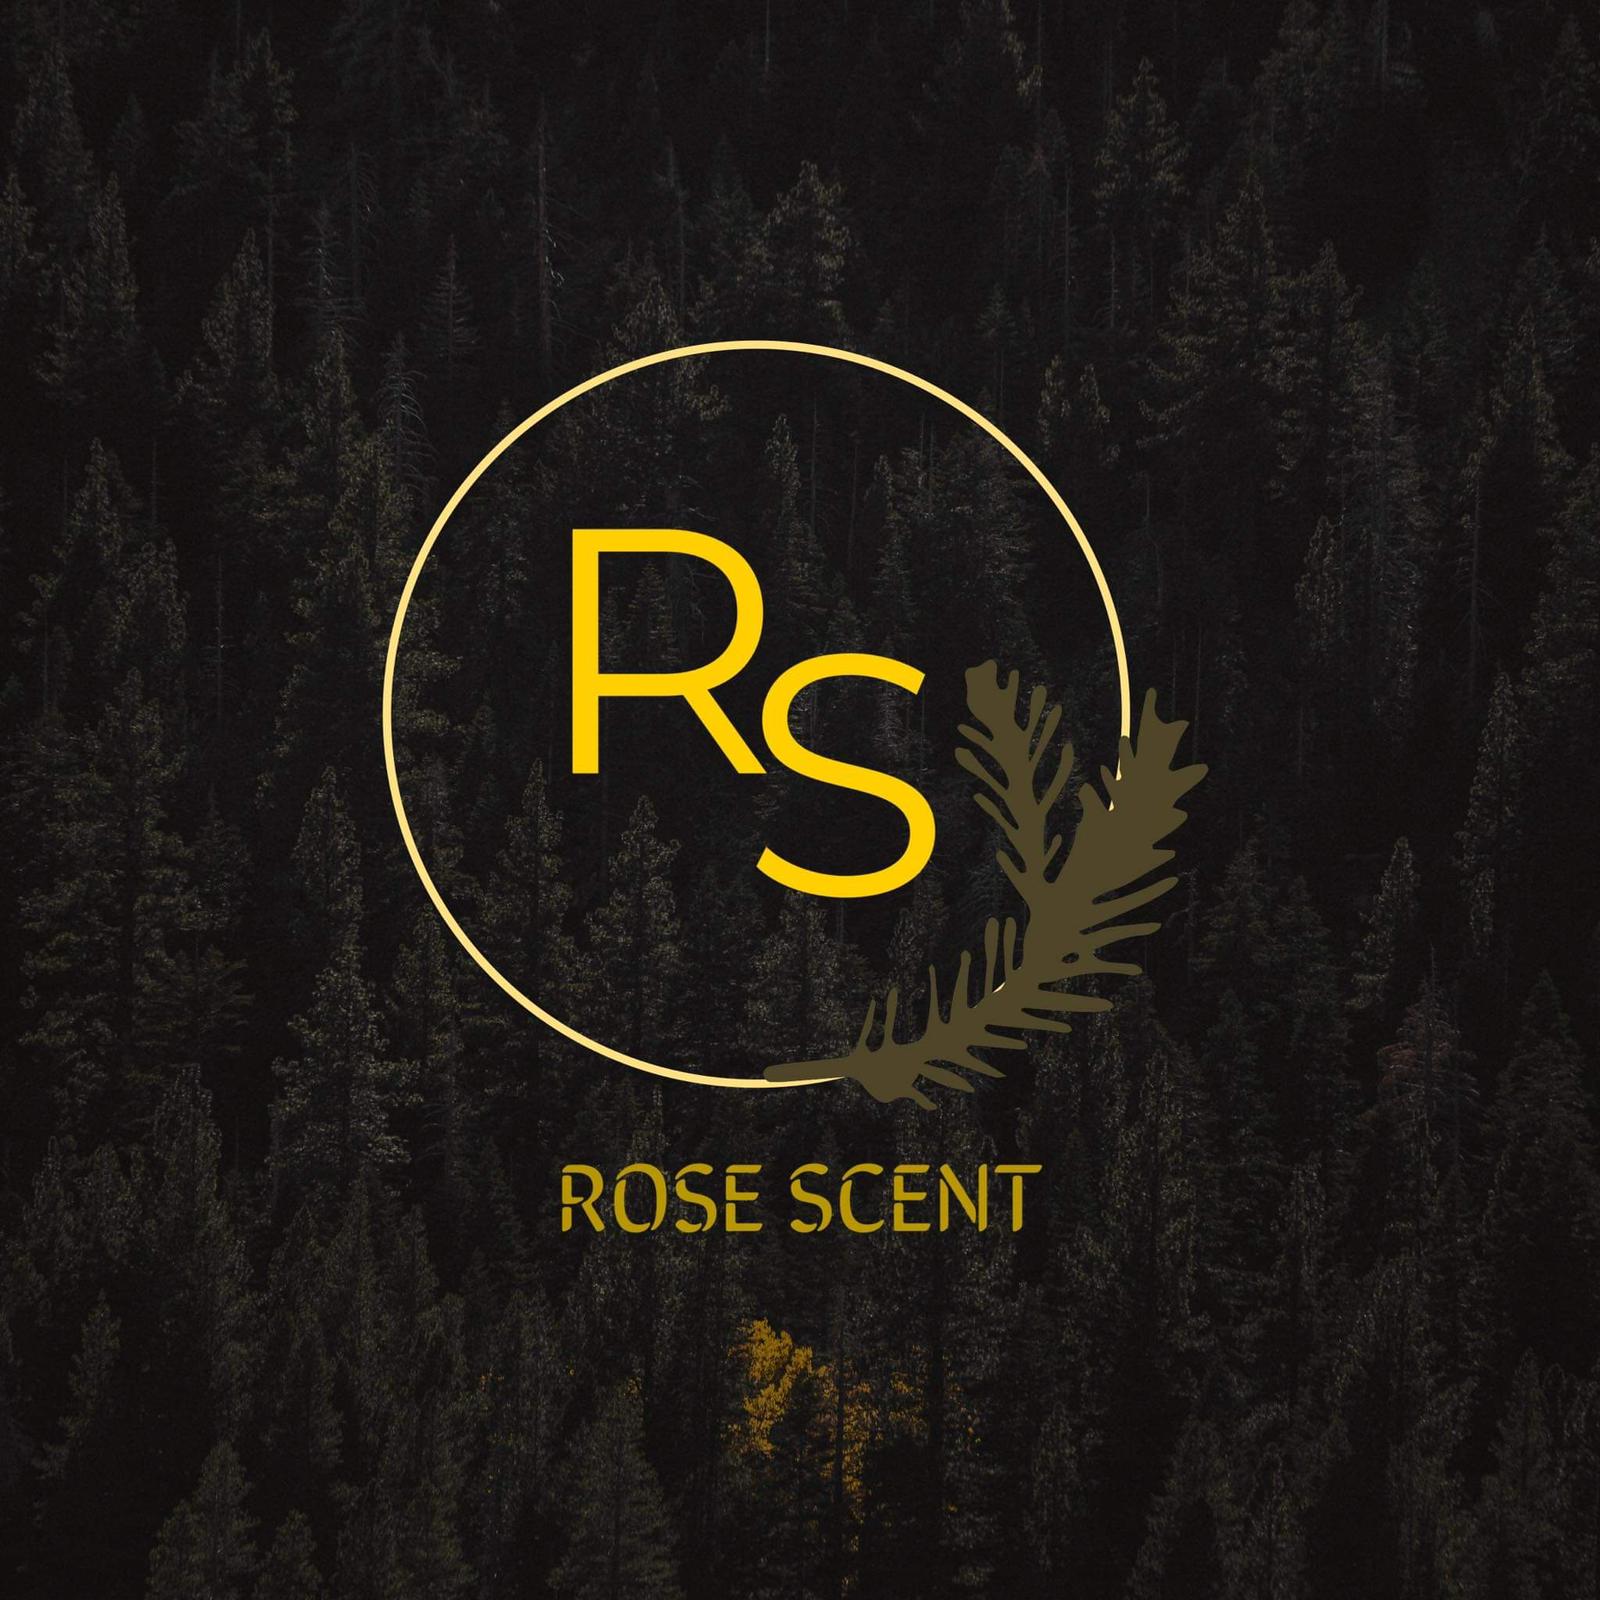 Rose scent 